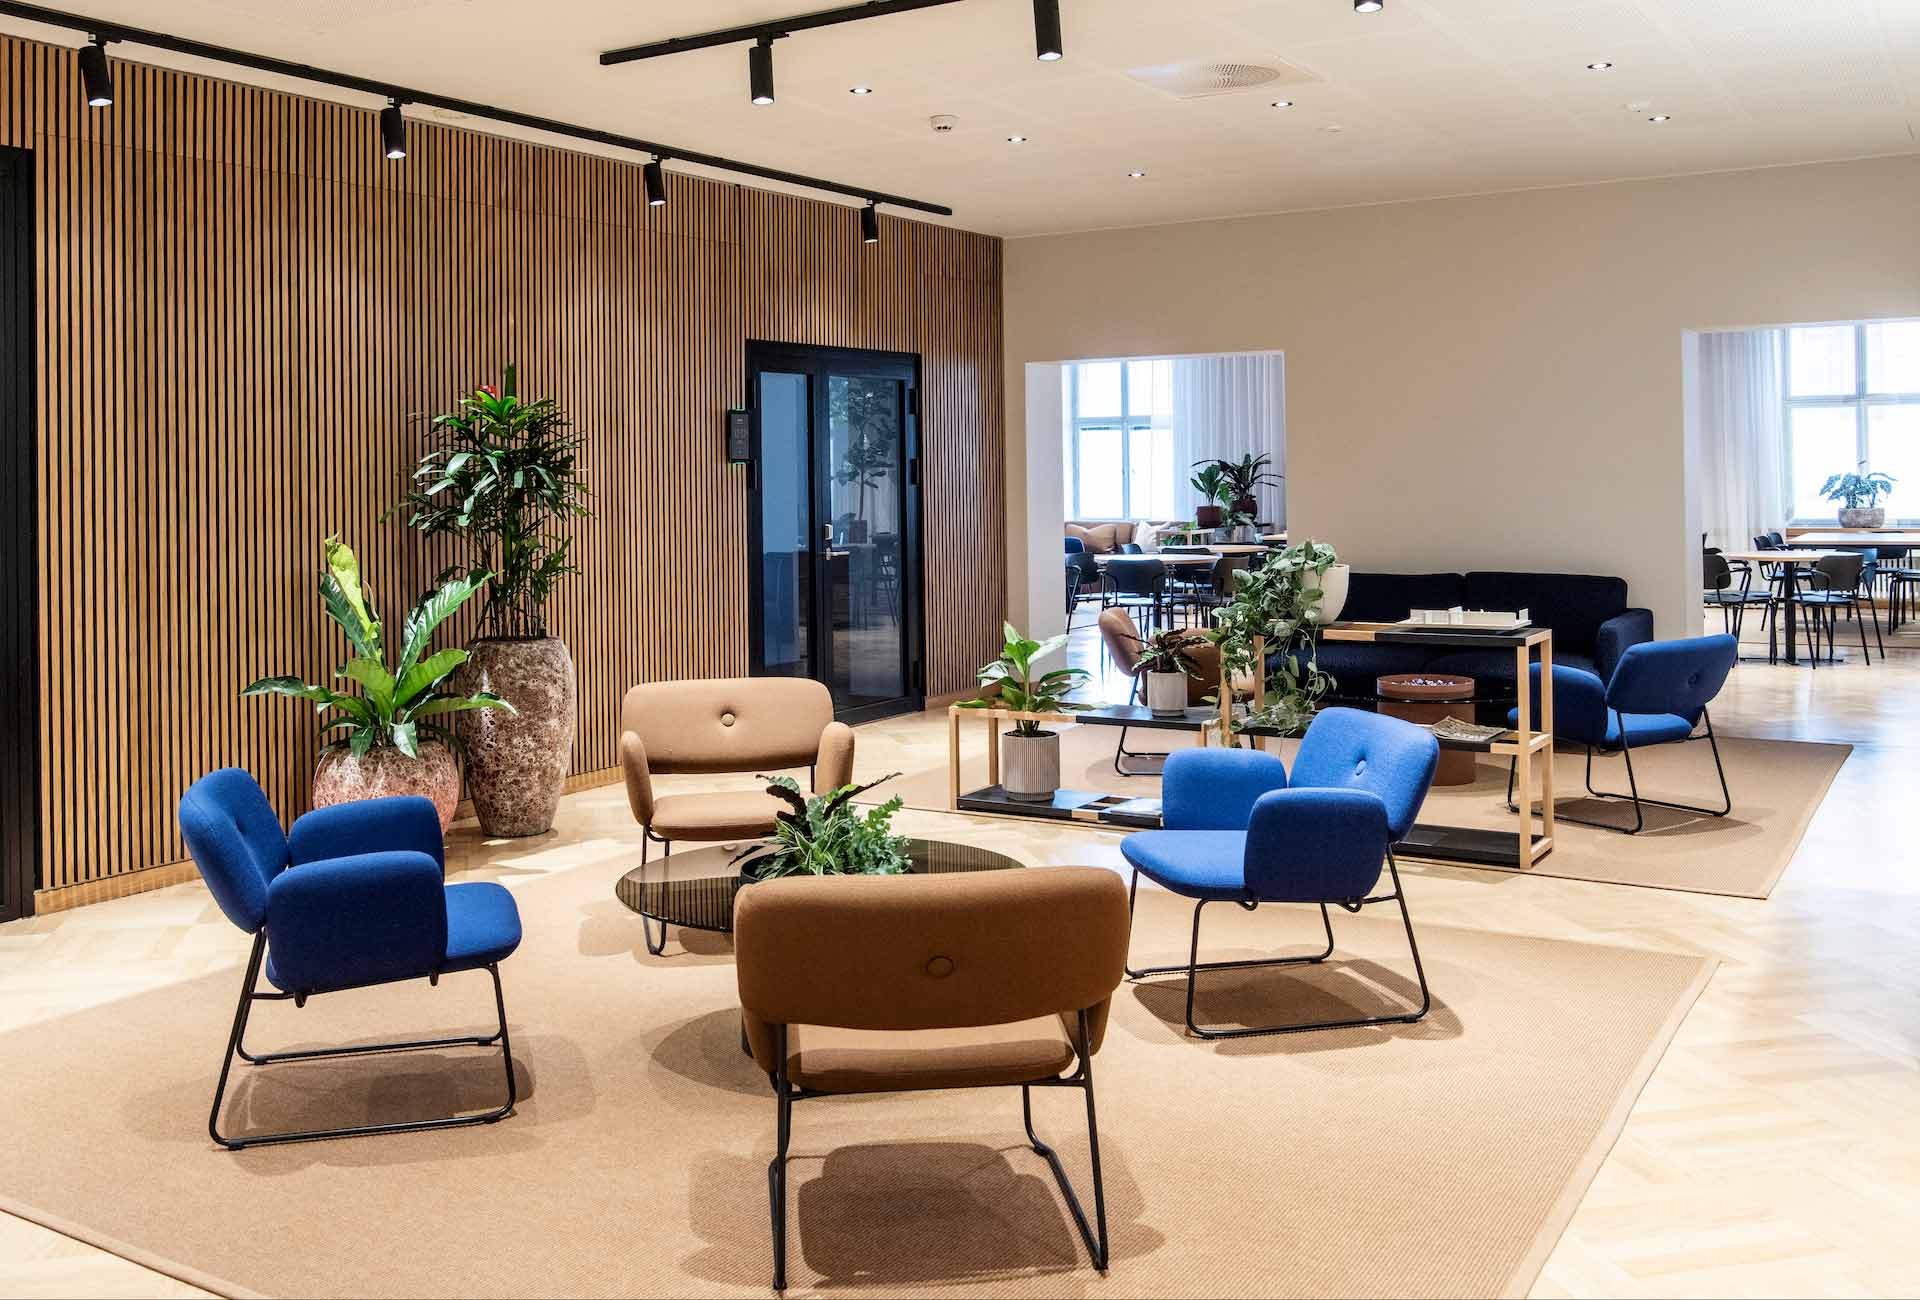 Toimiston suuri aulatila, jossa ruskean ja sinisen sävyisiä nojatuoleja ja viherkasveja